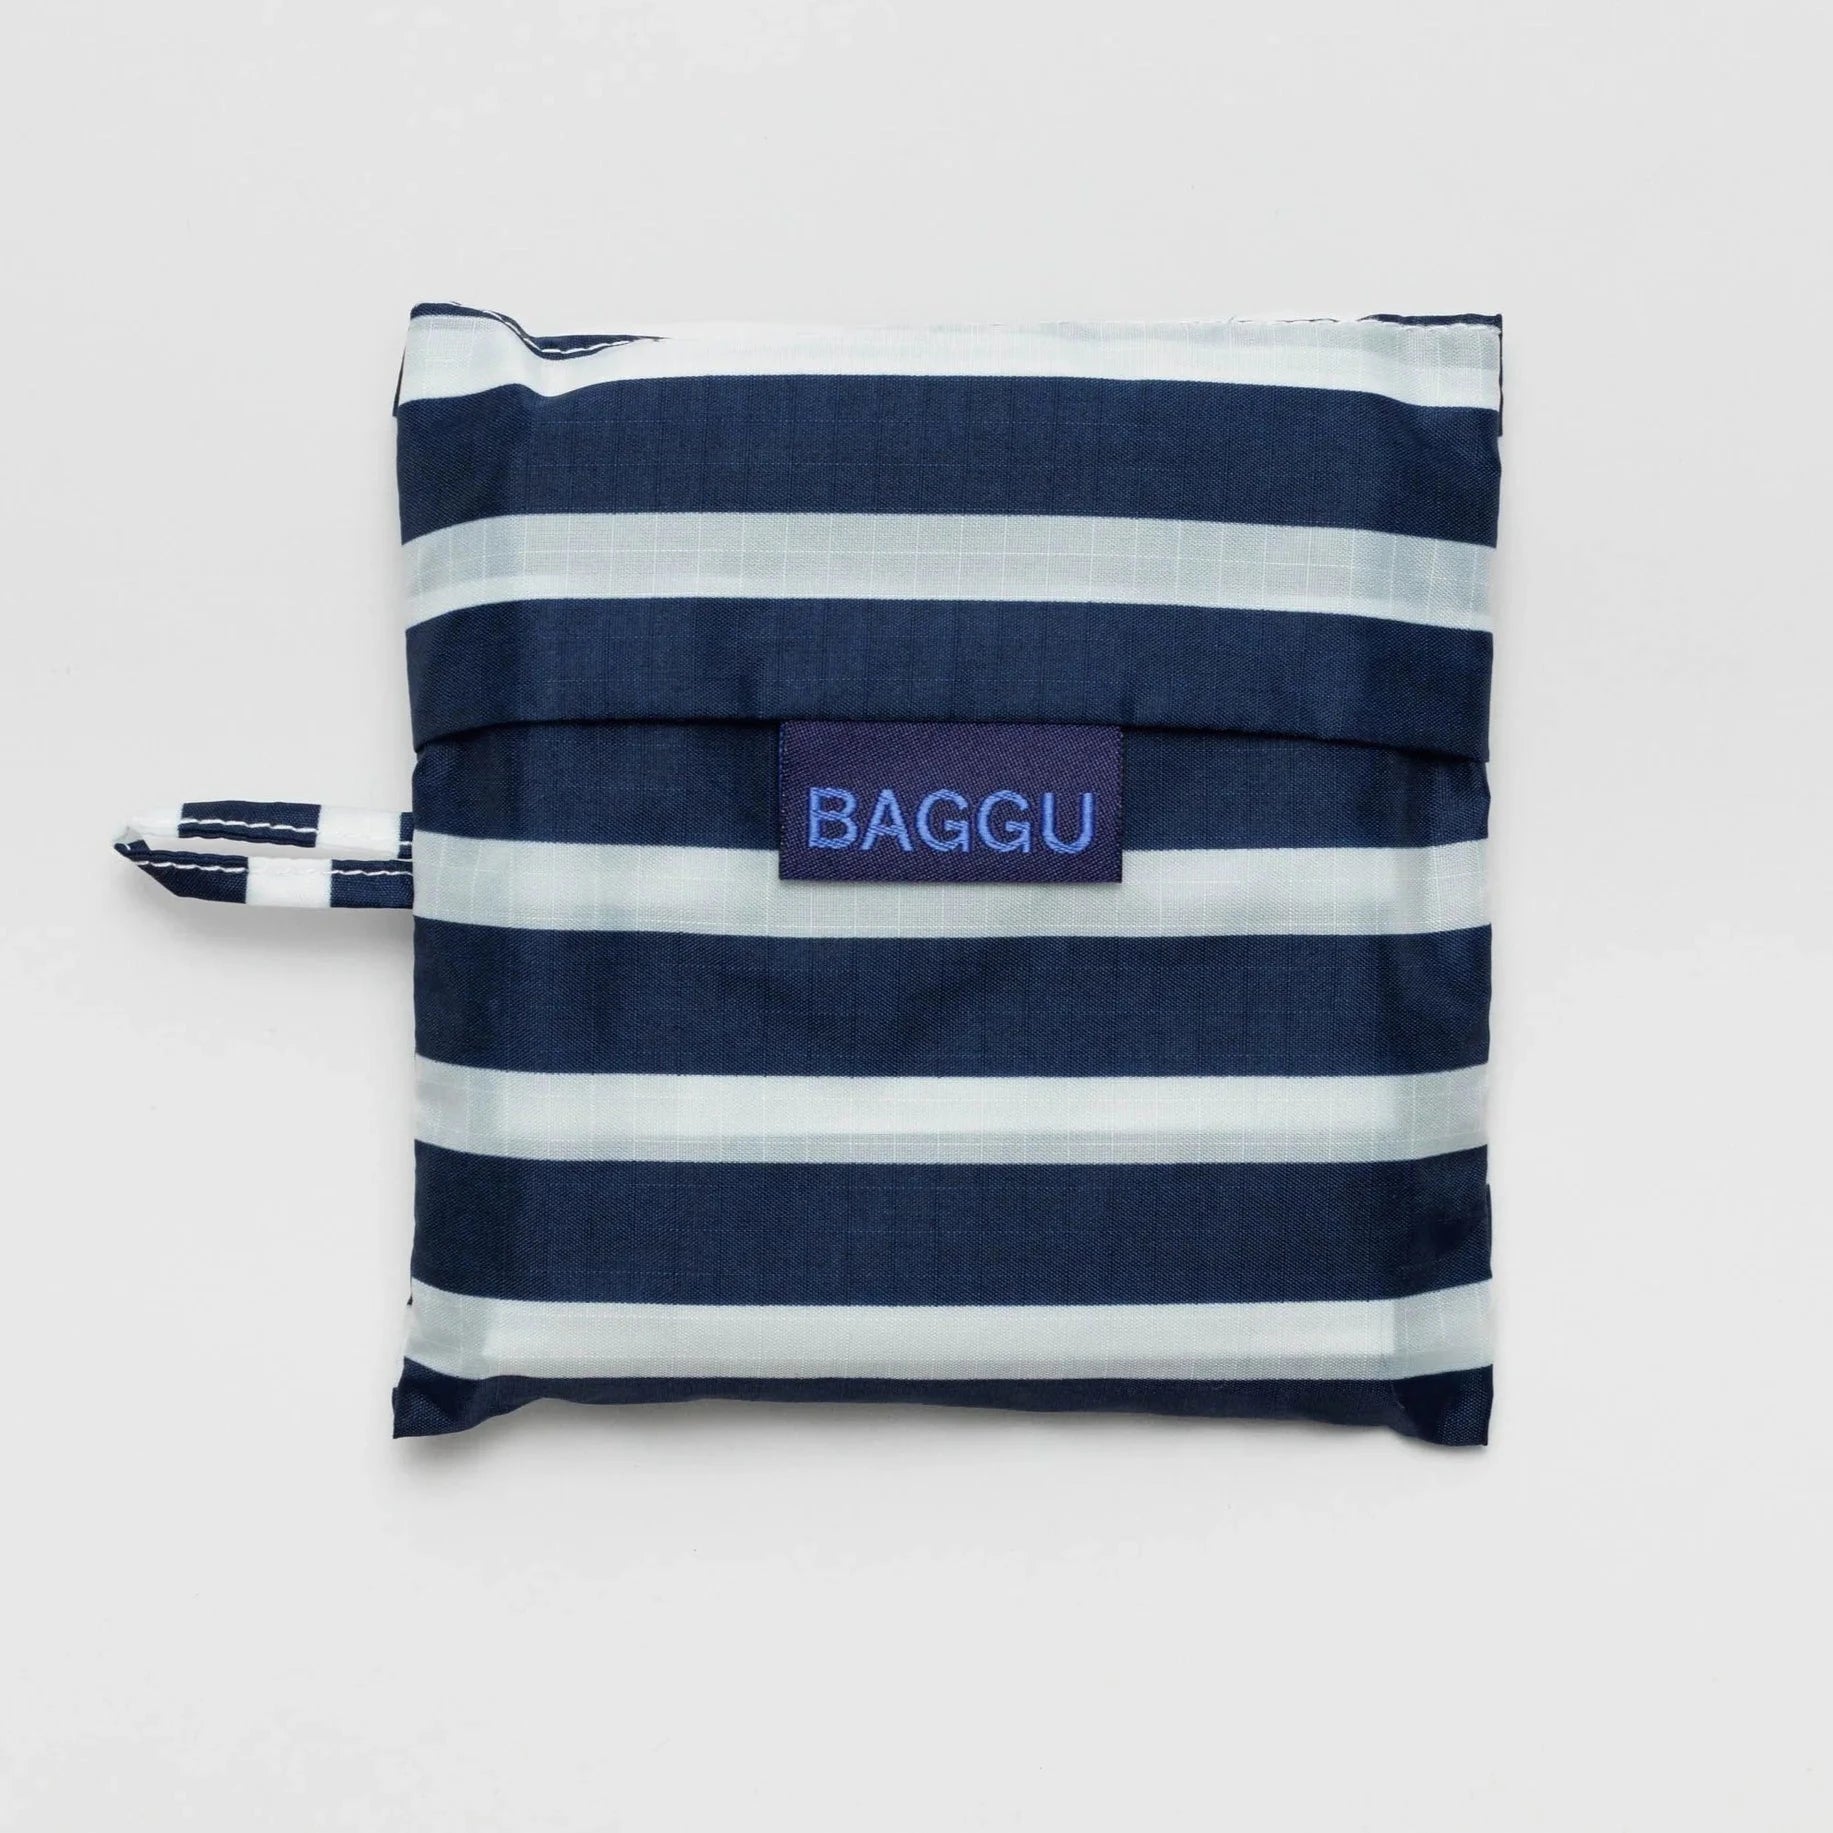 Unique Reusable Bags - 3 Styles